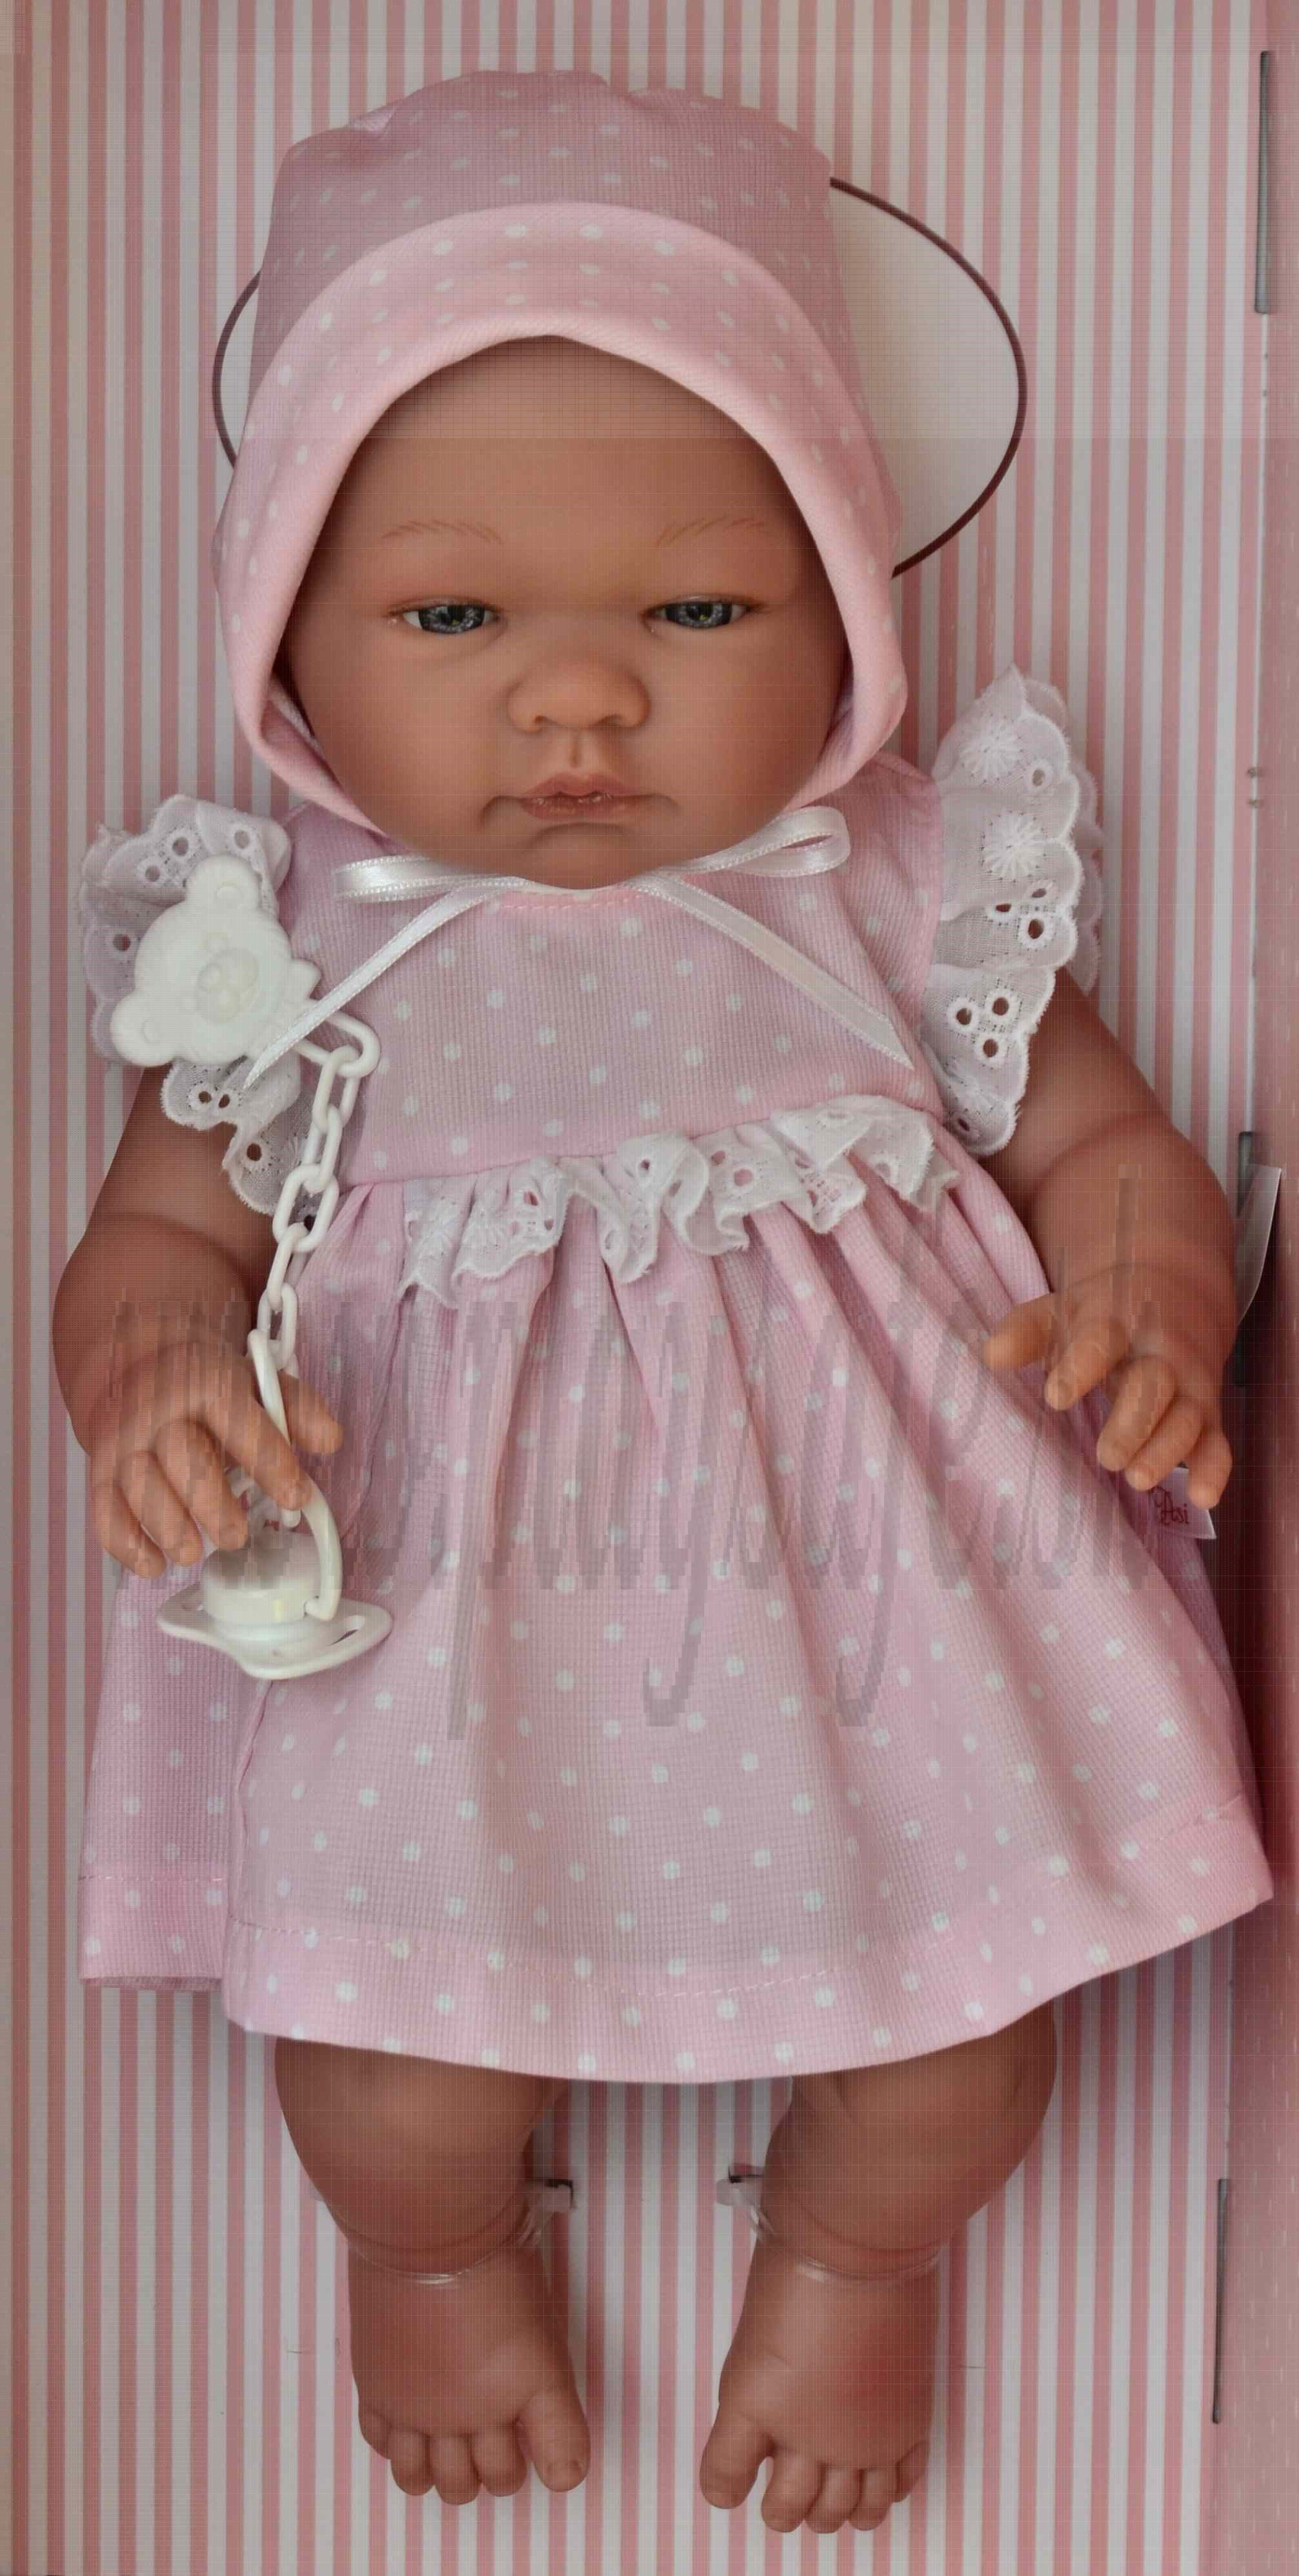 Asivil Realistické bábätko dievčatko María, 43cm bodkované šatočky